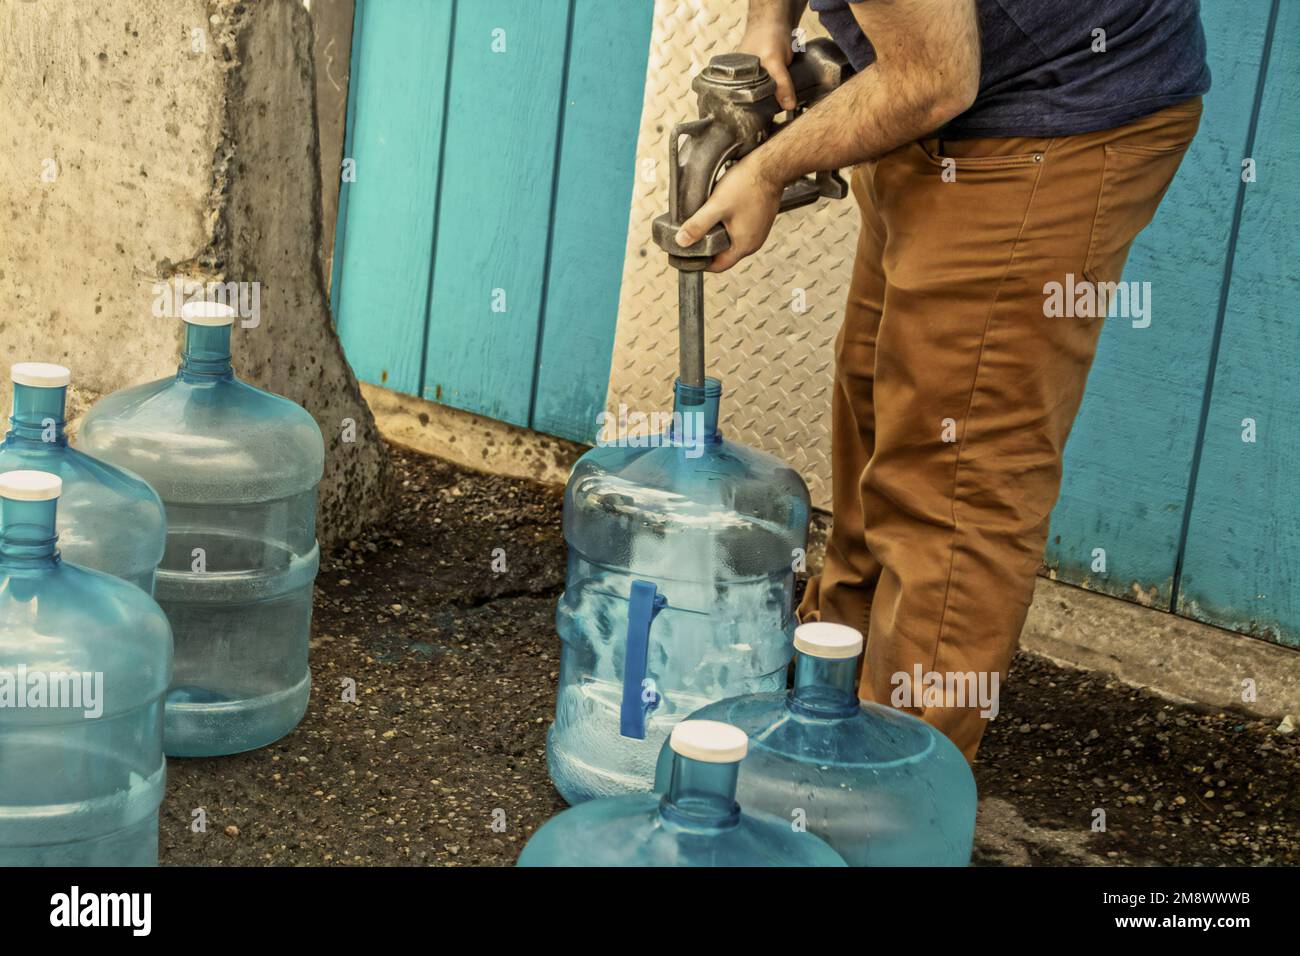 Giovane uomo che riempie cinque galloni caraffe per l'uso in cabina asciutta - senza acqua corrente - in Alaska USA Foto Stock